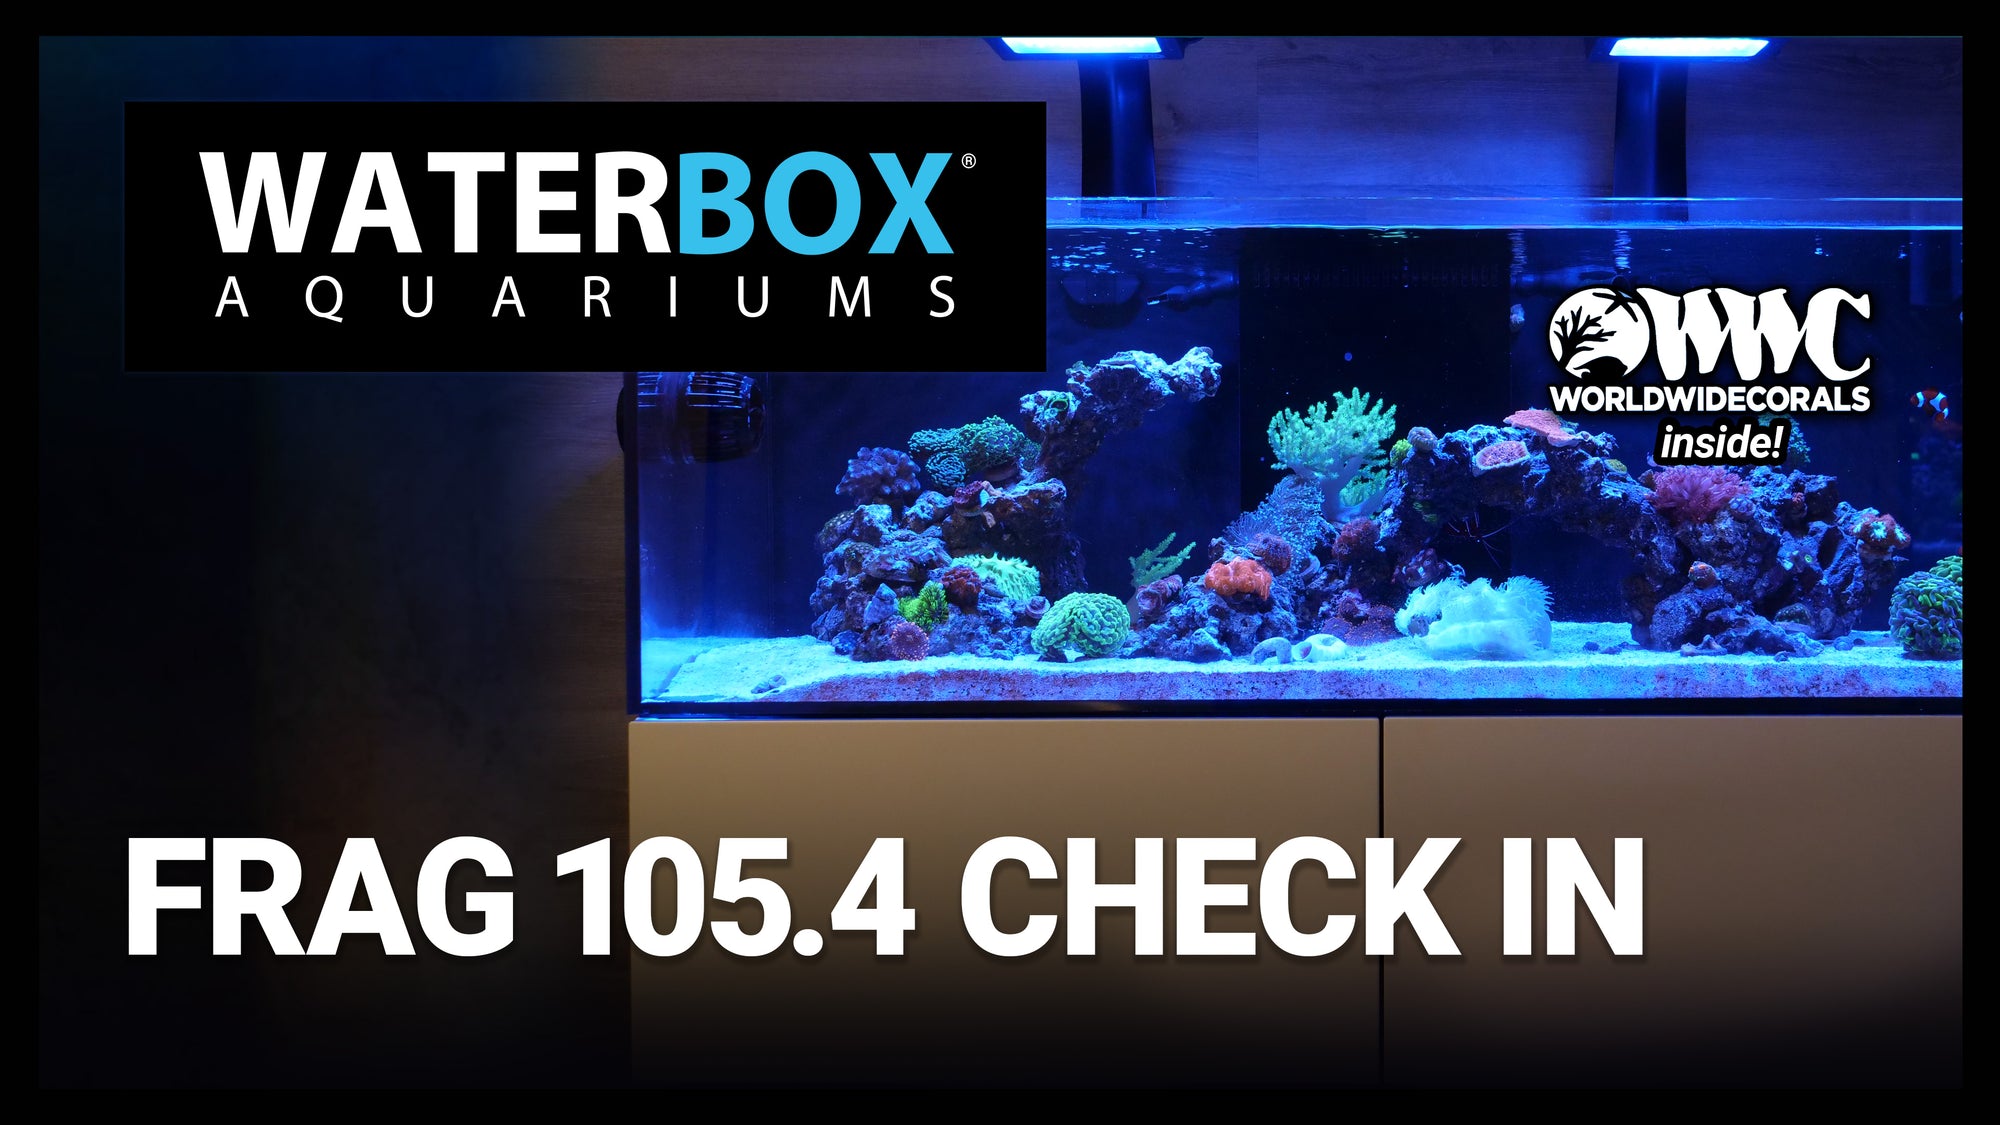 Waterbox FRAG 105.4 aquarium check in